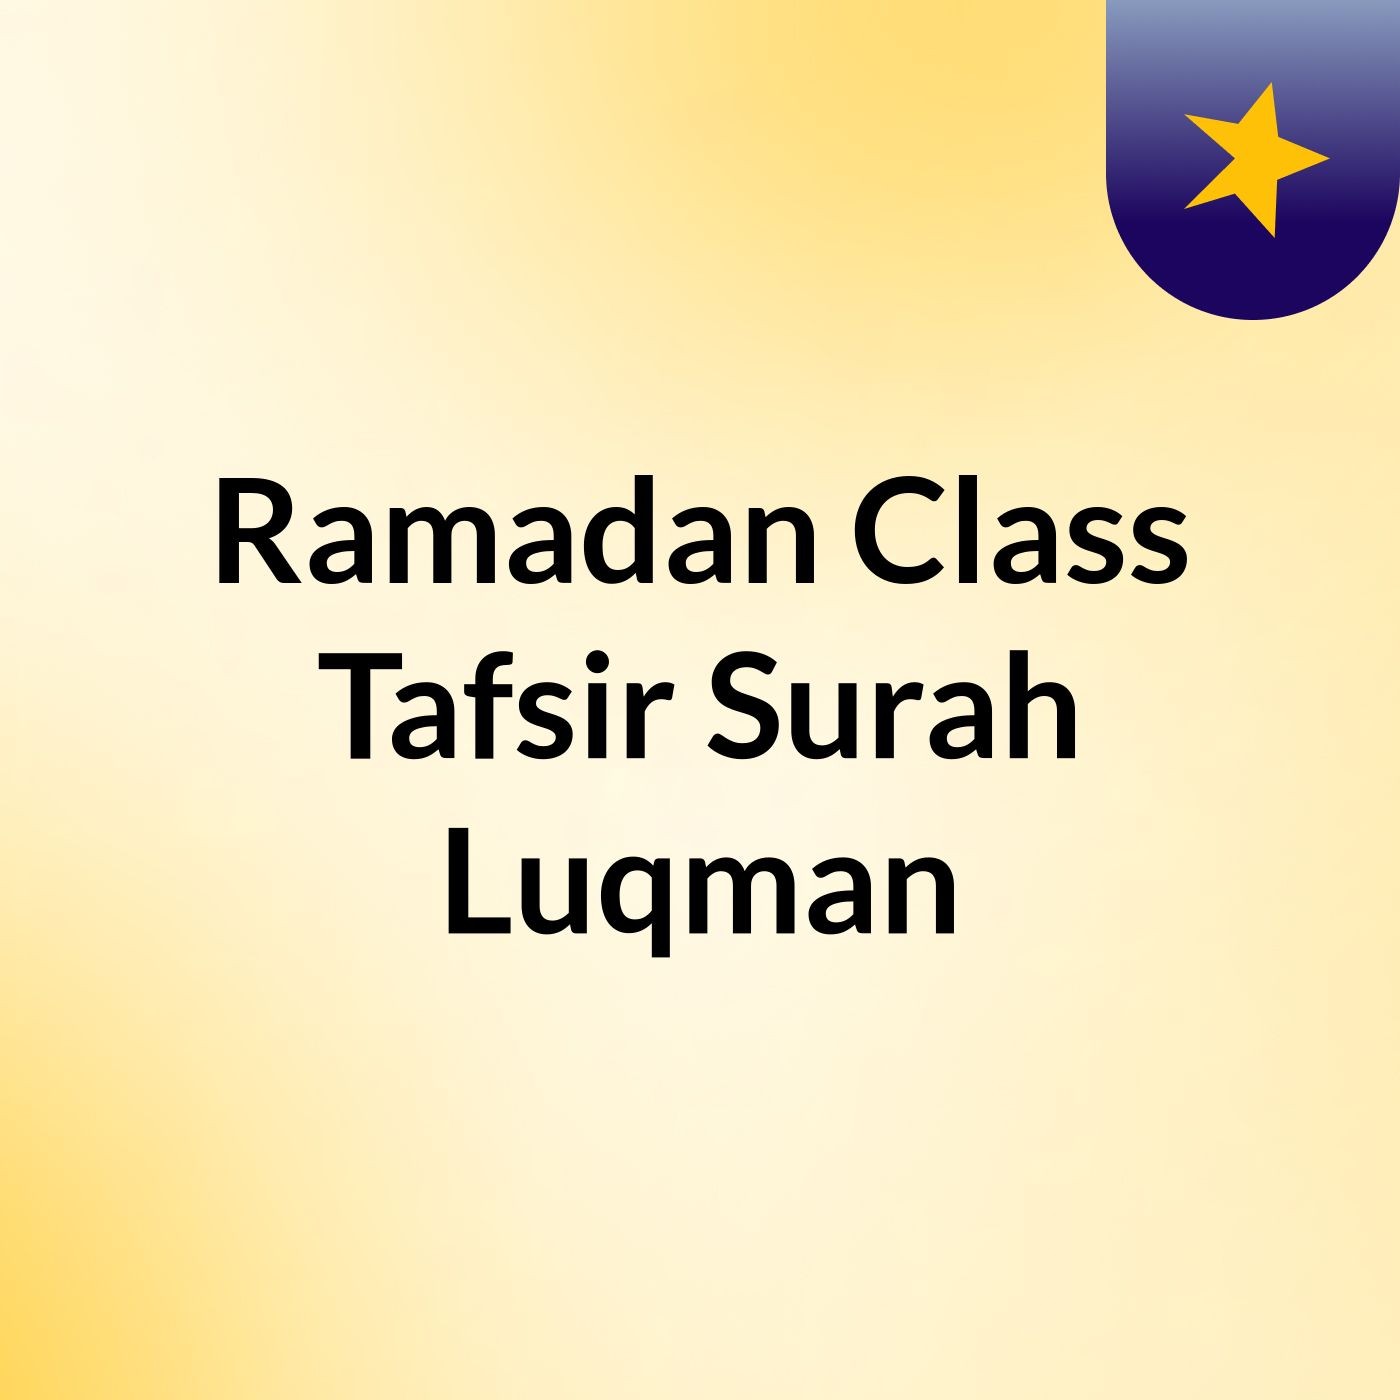 Ramadan Class: Tafsir Surah Luqman